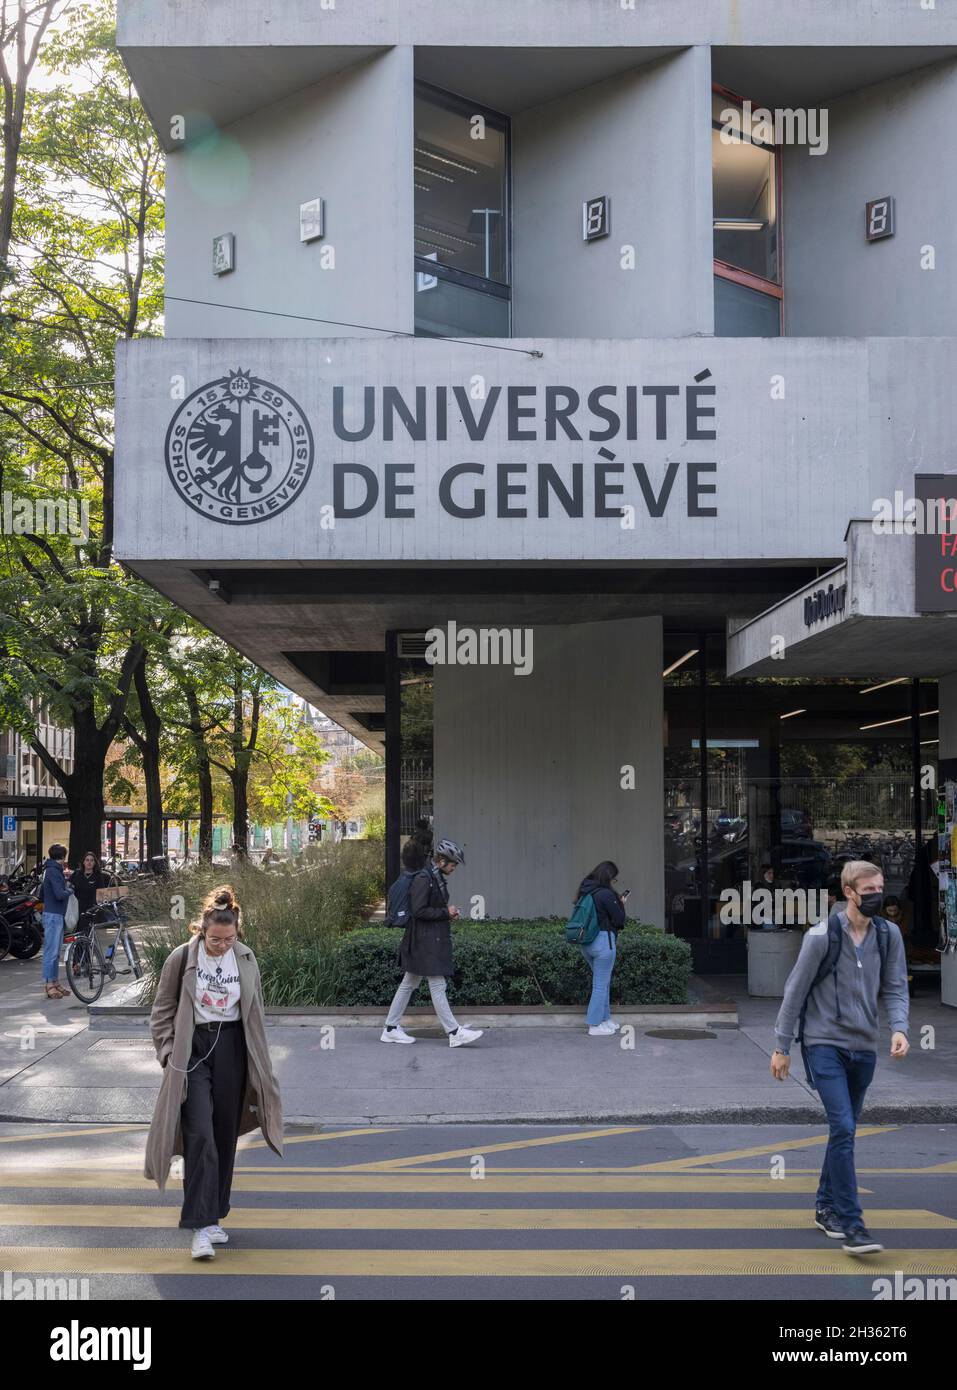 students outside the University of Geneva Uni Dafour building, Geneva, Switzerland Stock Photo